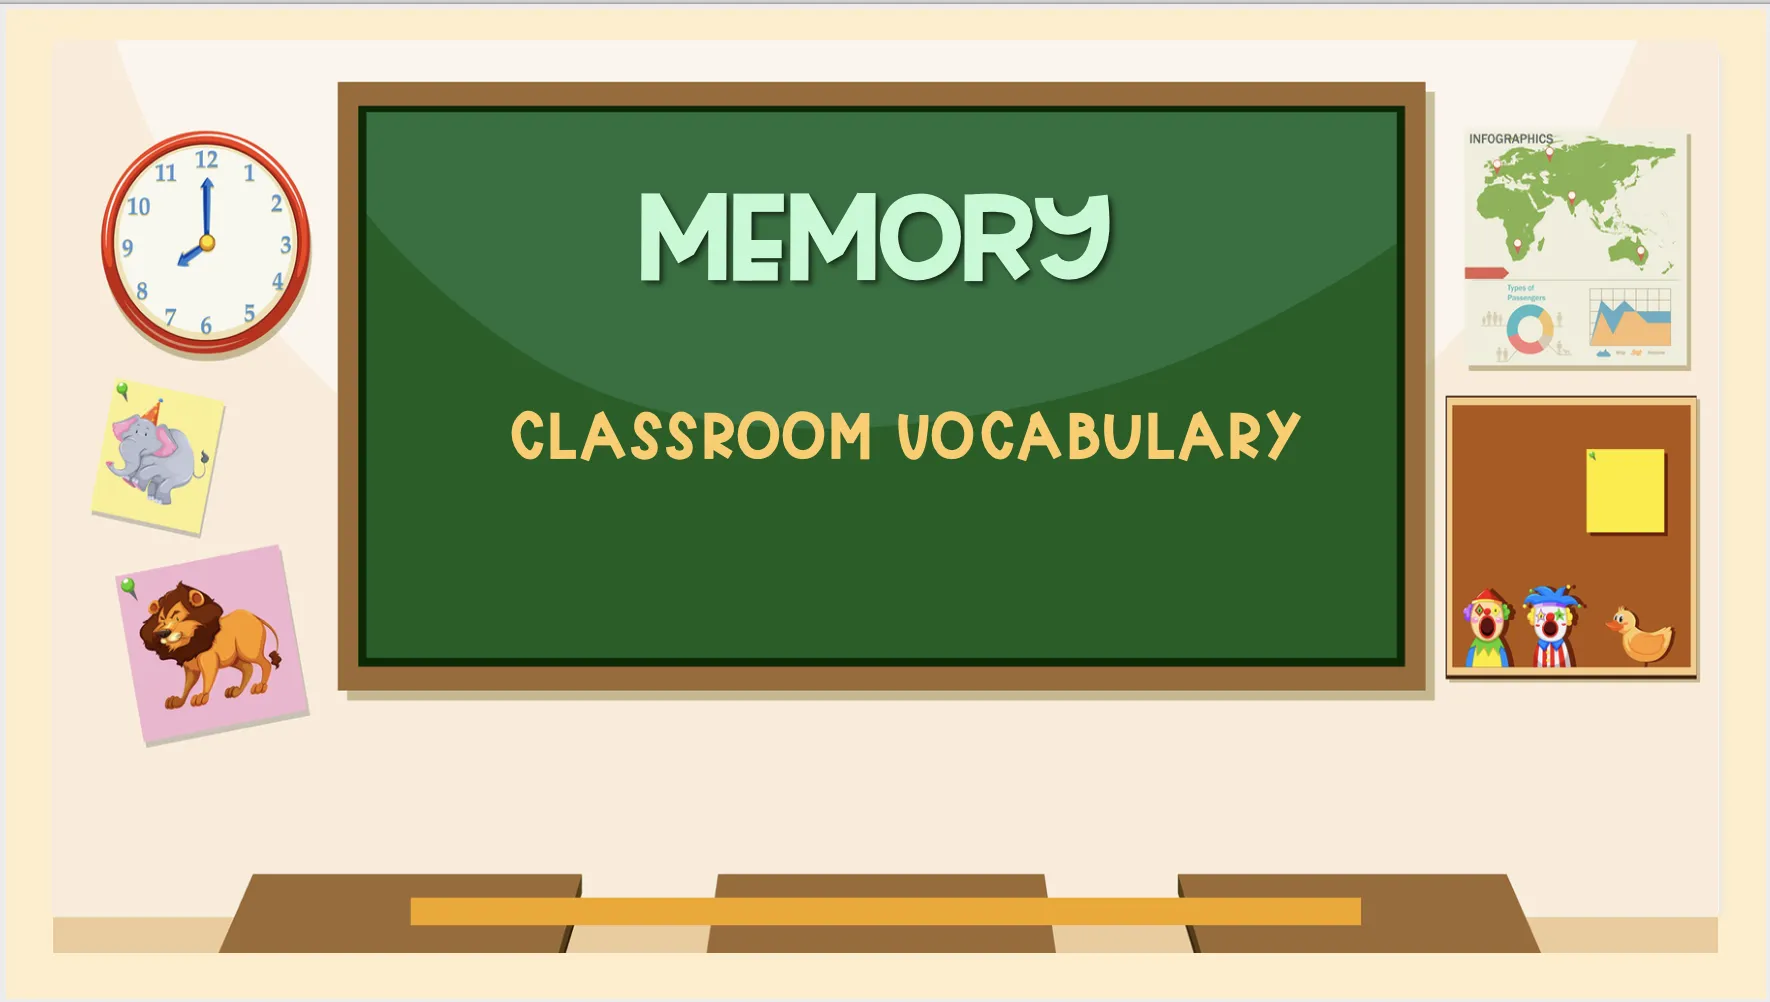 MEMORY: classroom vocabulary